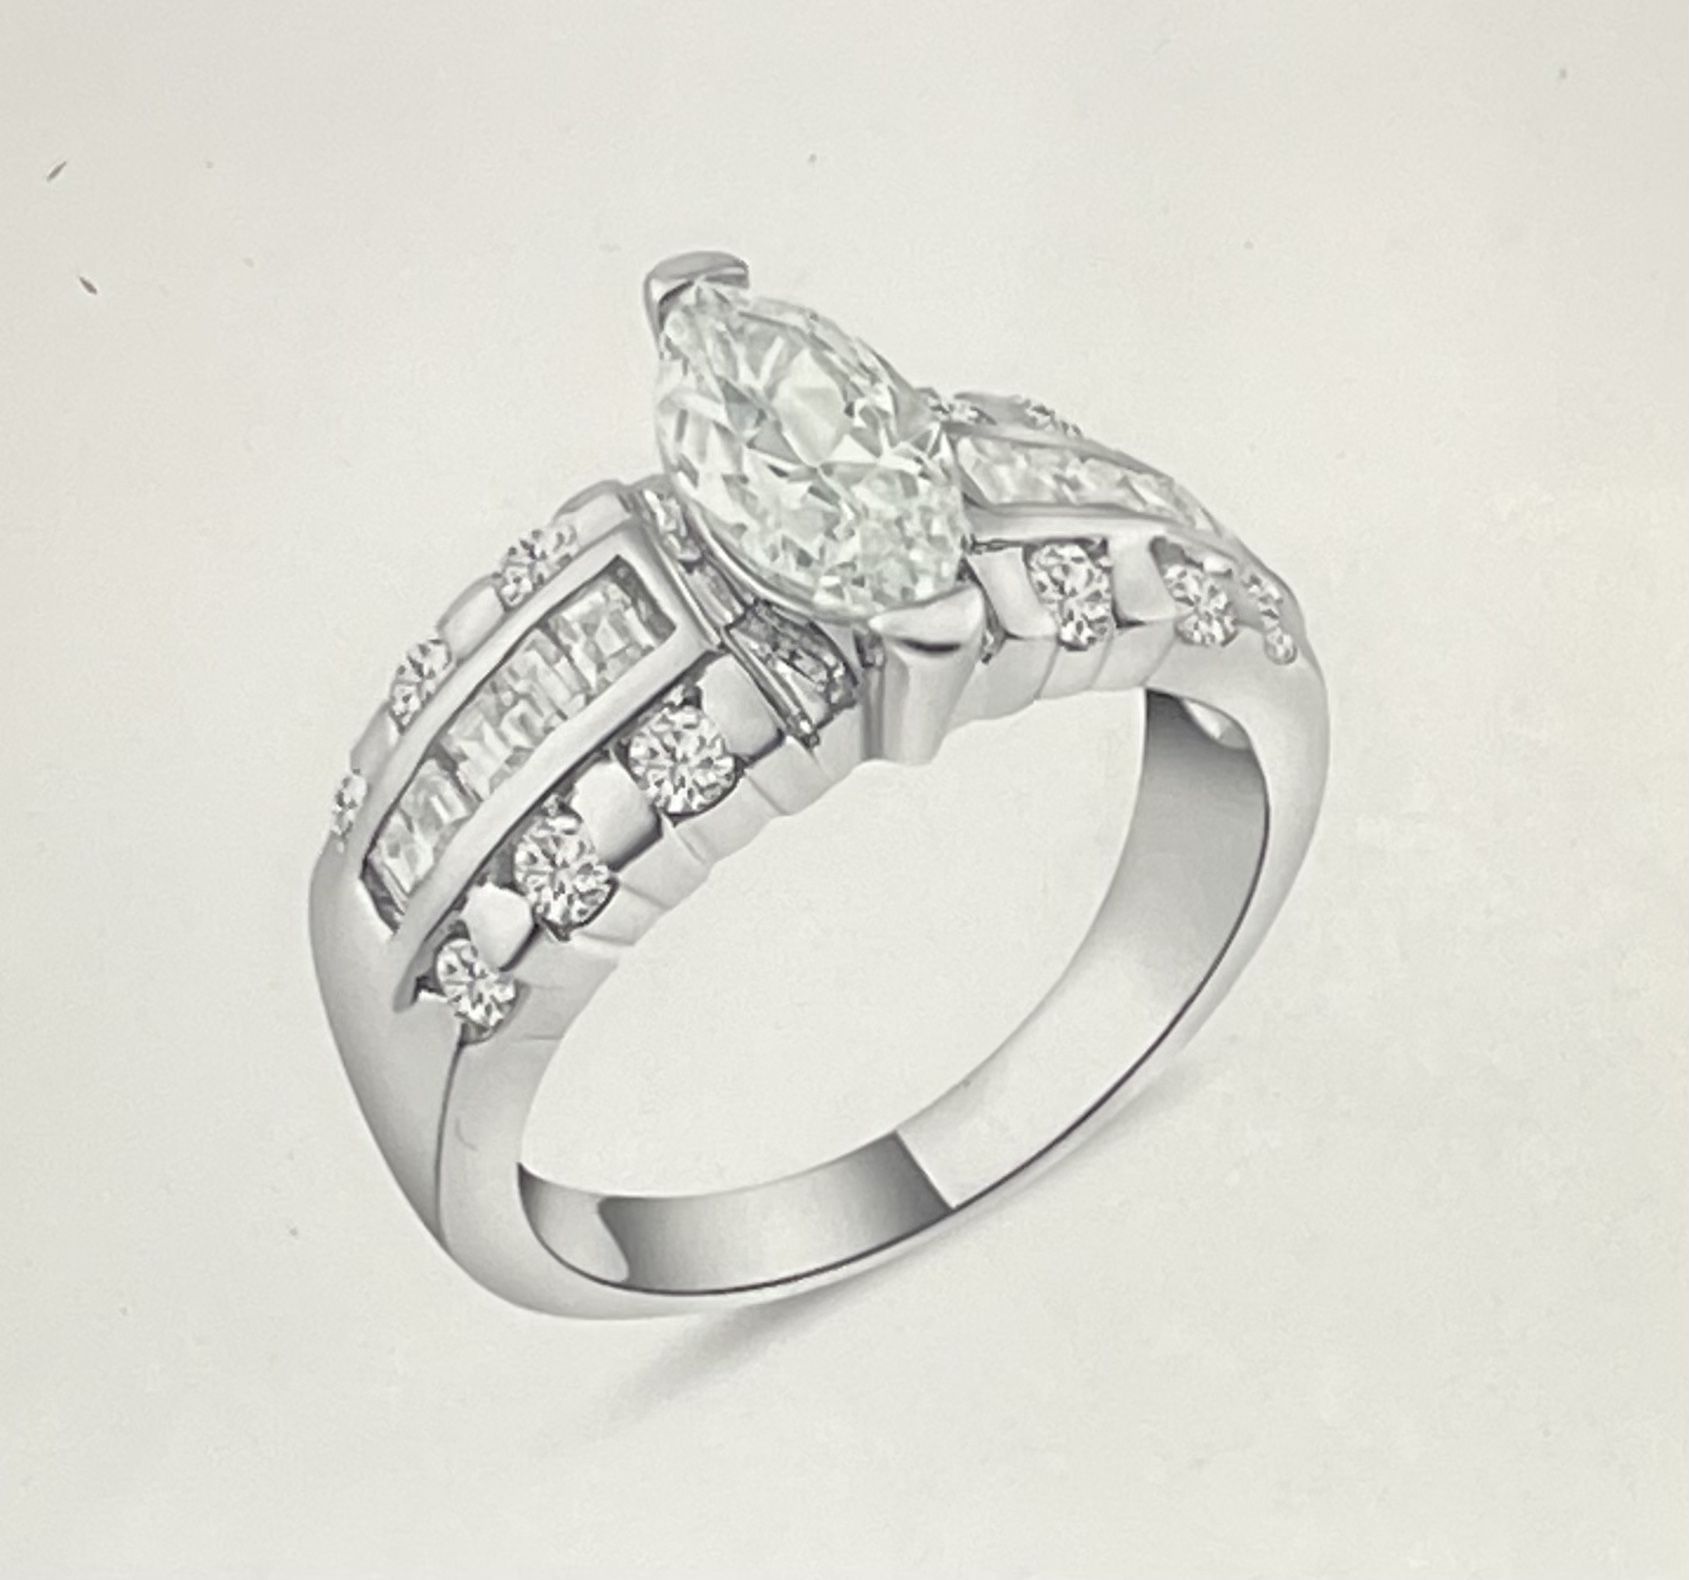 Plata Wedding Engagement Ring Size 5,7,9 Option 